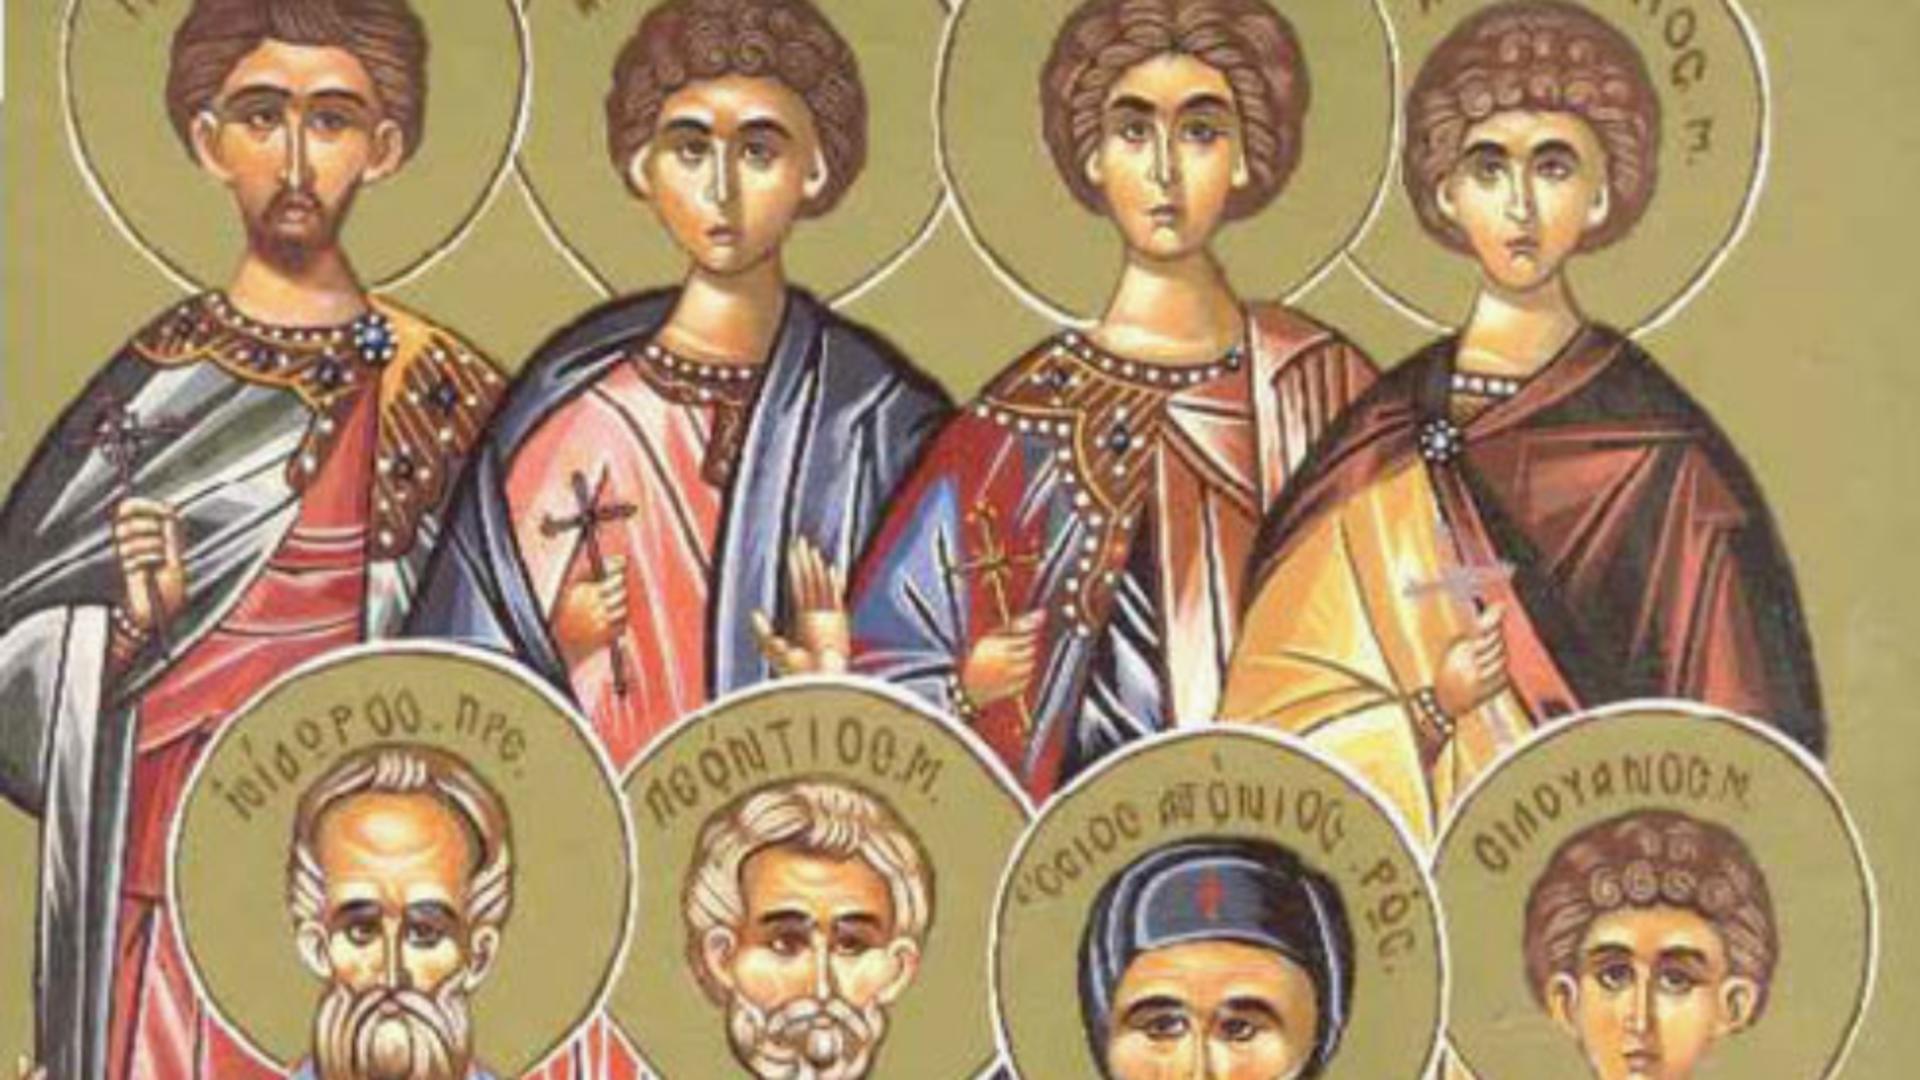 SĂRBĂTOARE 10 iulie: Mari sfinți pomeniți astăzi în calendarul ortodox. Zi cu importanță deosebită